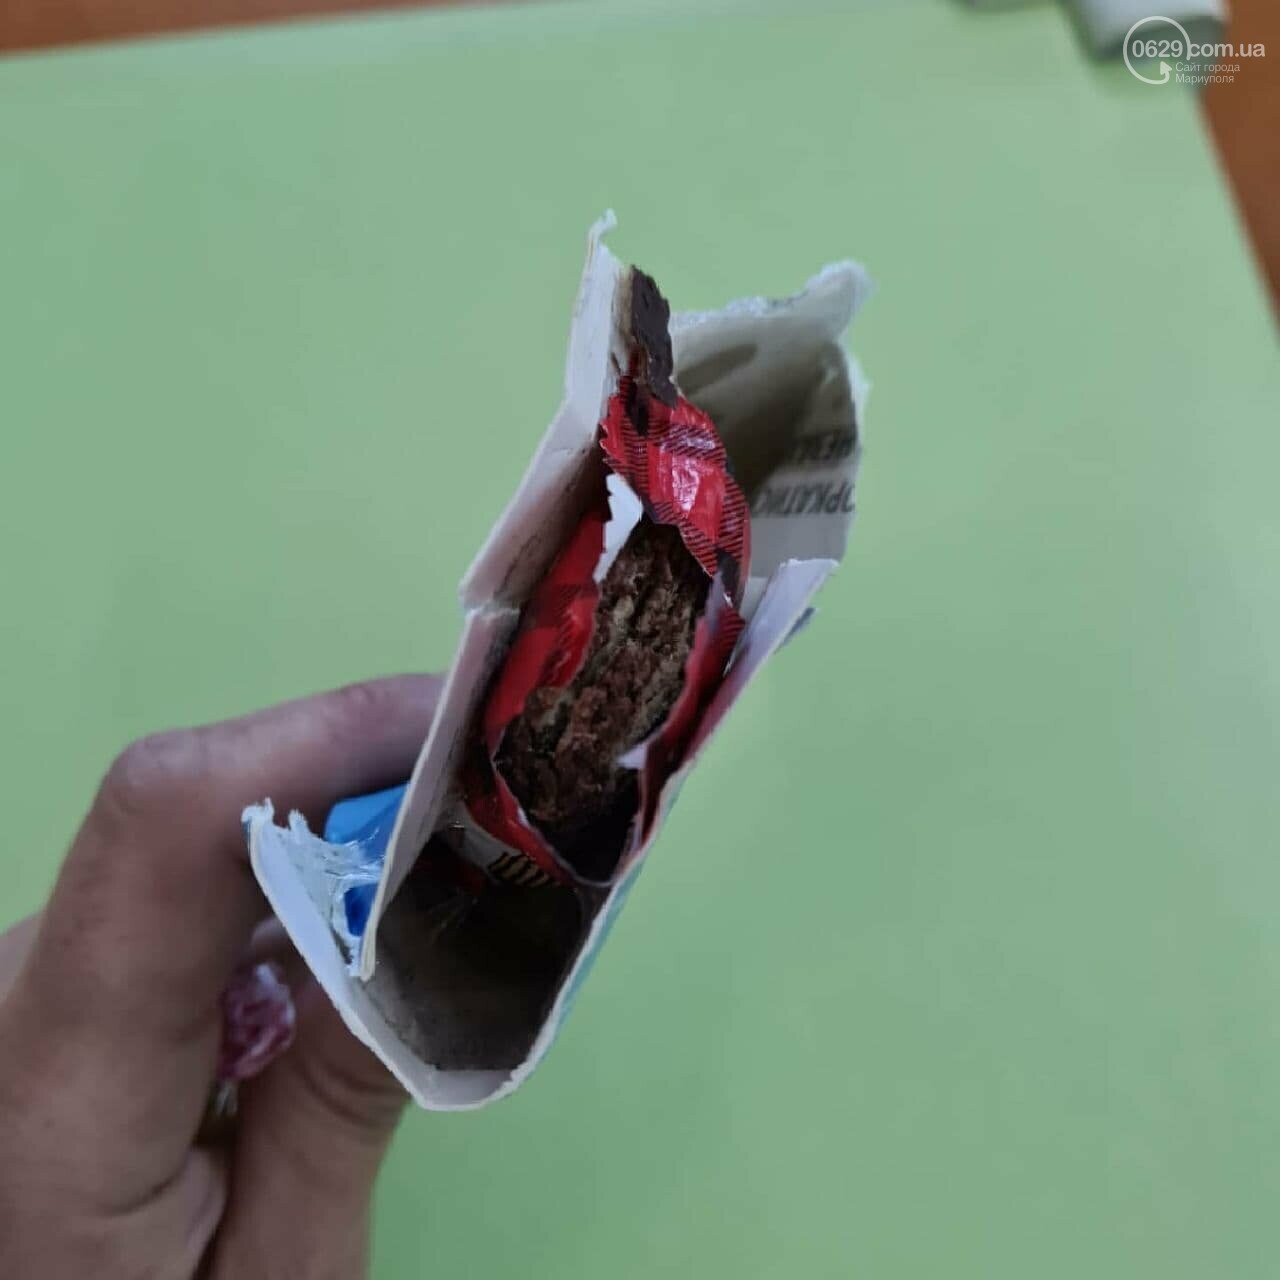 У Маріуполі в ТРЦ дитина знайшла і з'їла засіб від гризунів, який прийняла за цукерку